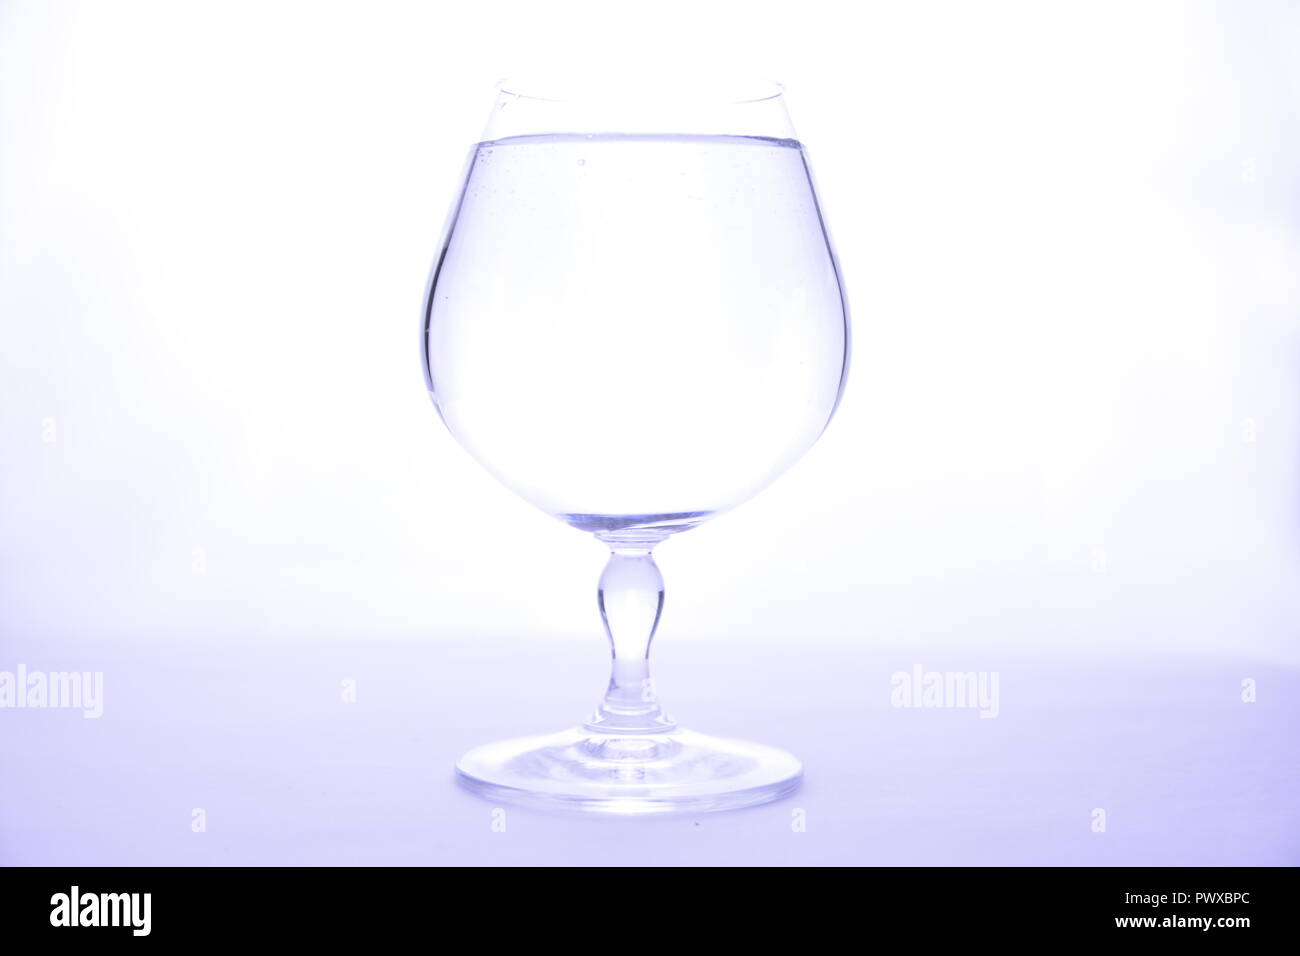 Verre cristal transparent pour le cognac sur fond blanc Banque D'Images